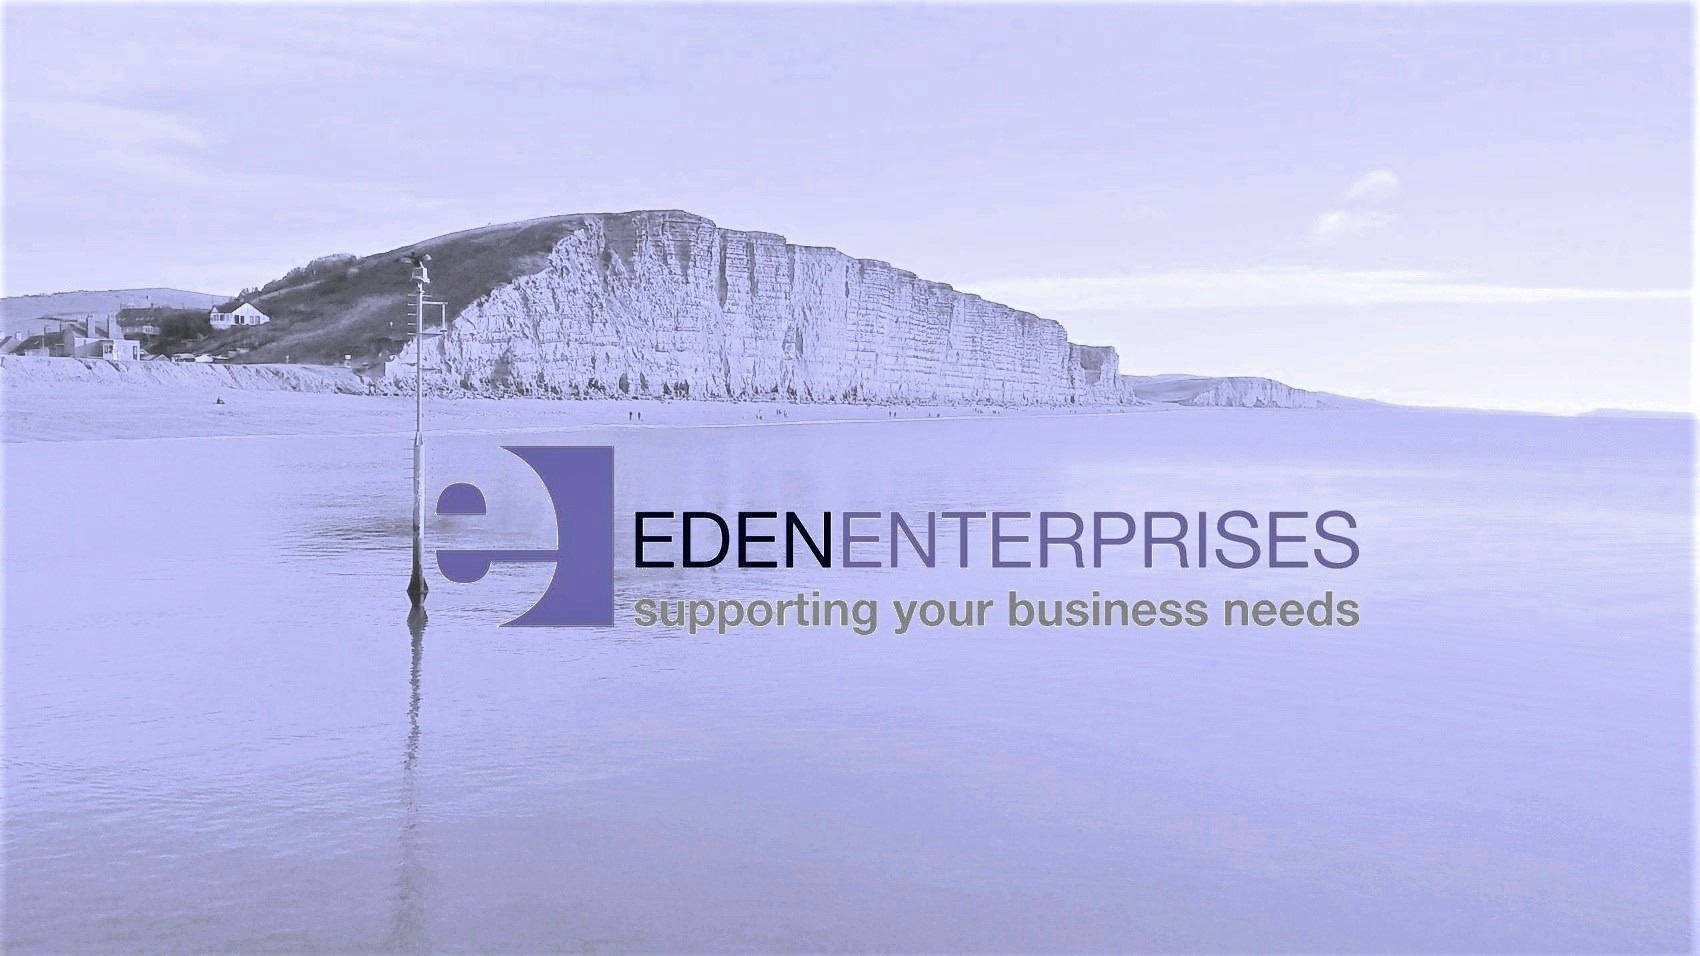 (c) Eden-enterprises.co.uk